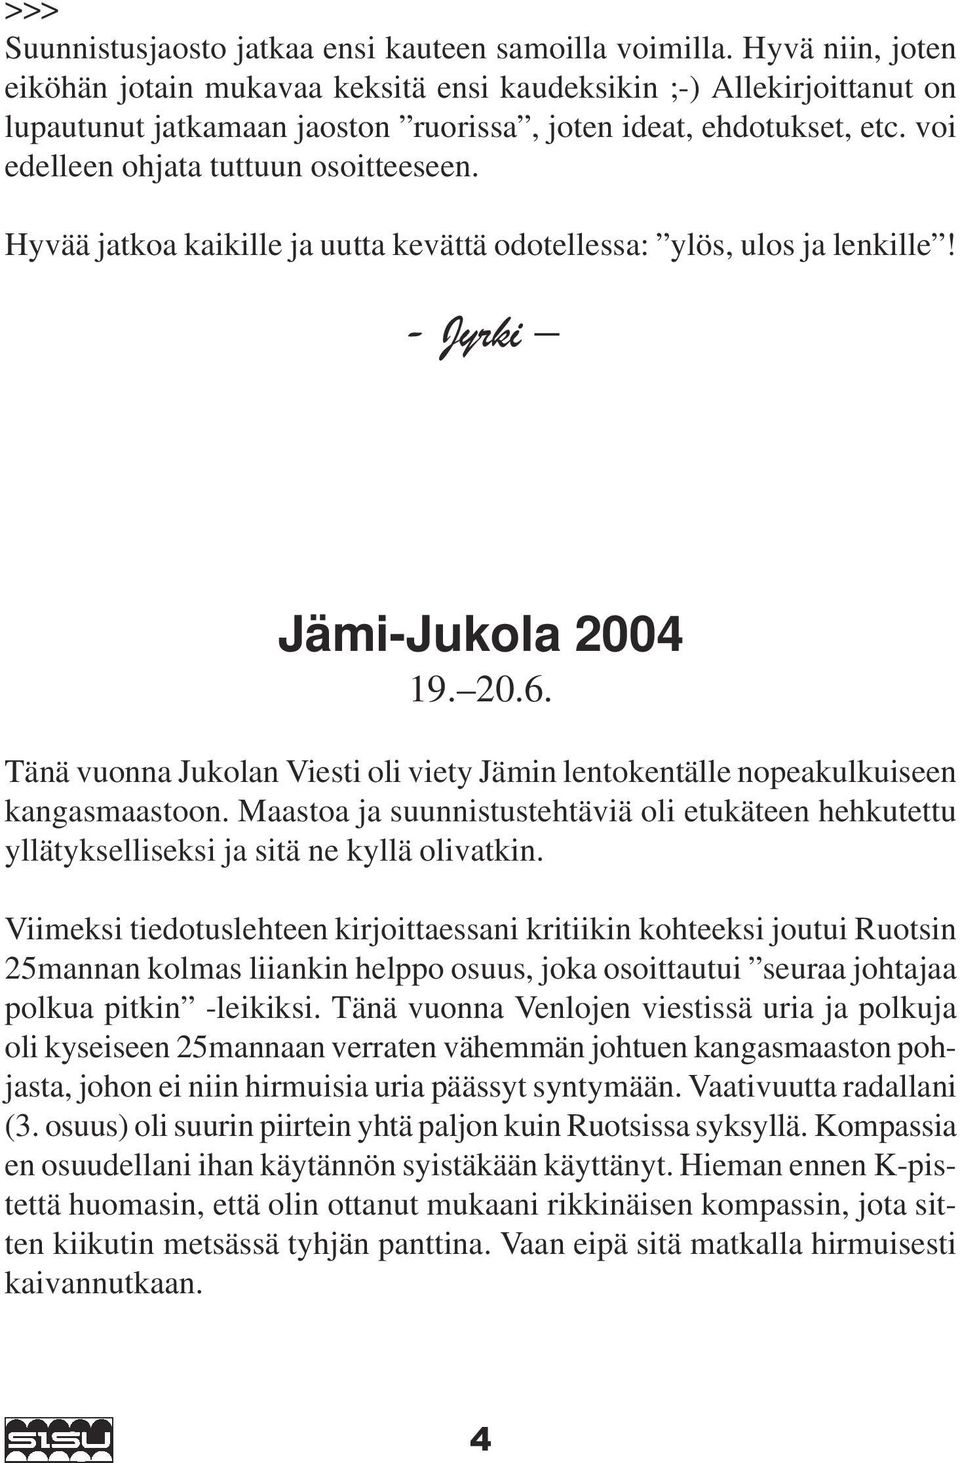 Hyvää jatkoa kaikille ja uutta kevättä odotellessa: ylös, ulos ja lenkille! - Jyrki Jämi-Jukola 2004 19. 20.6. Tänä vuonna Jukolan Viesti oli viety Jämin lentokentälle nopeakulkuiseen kangasmaastoon.